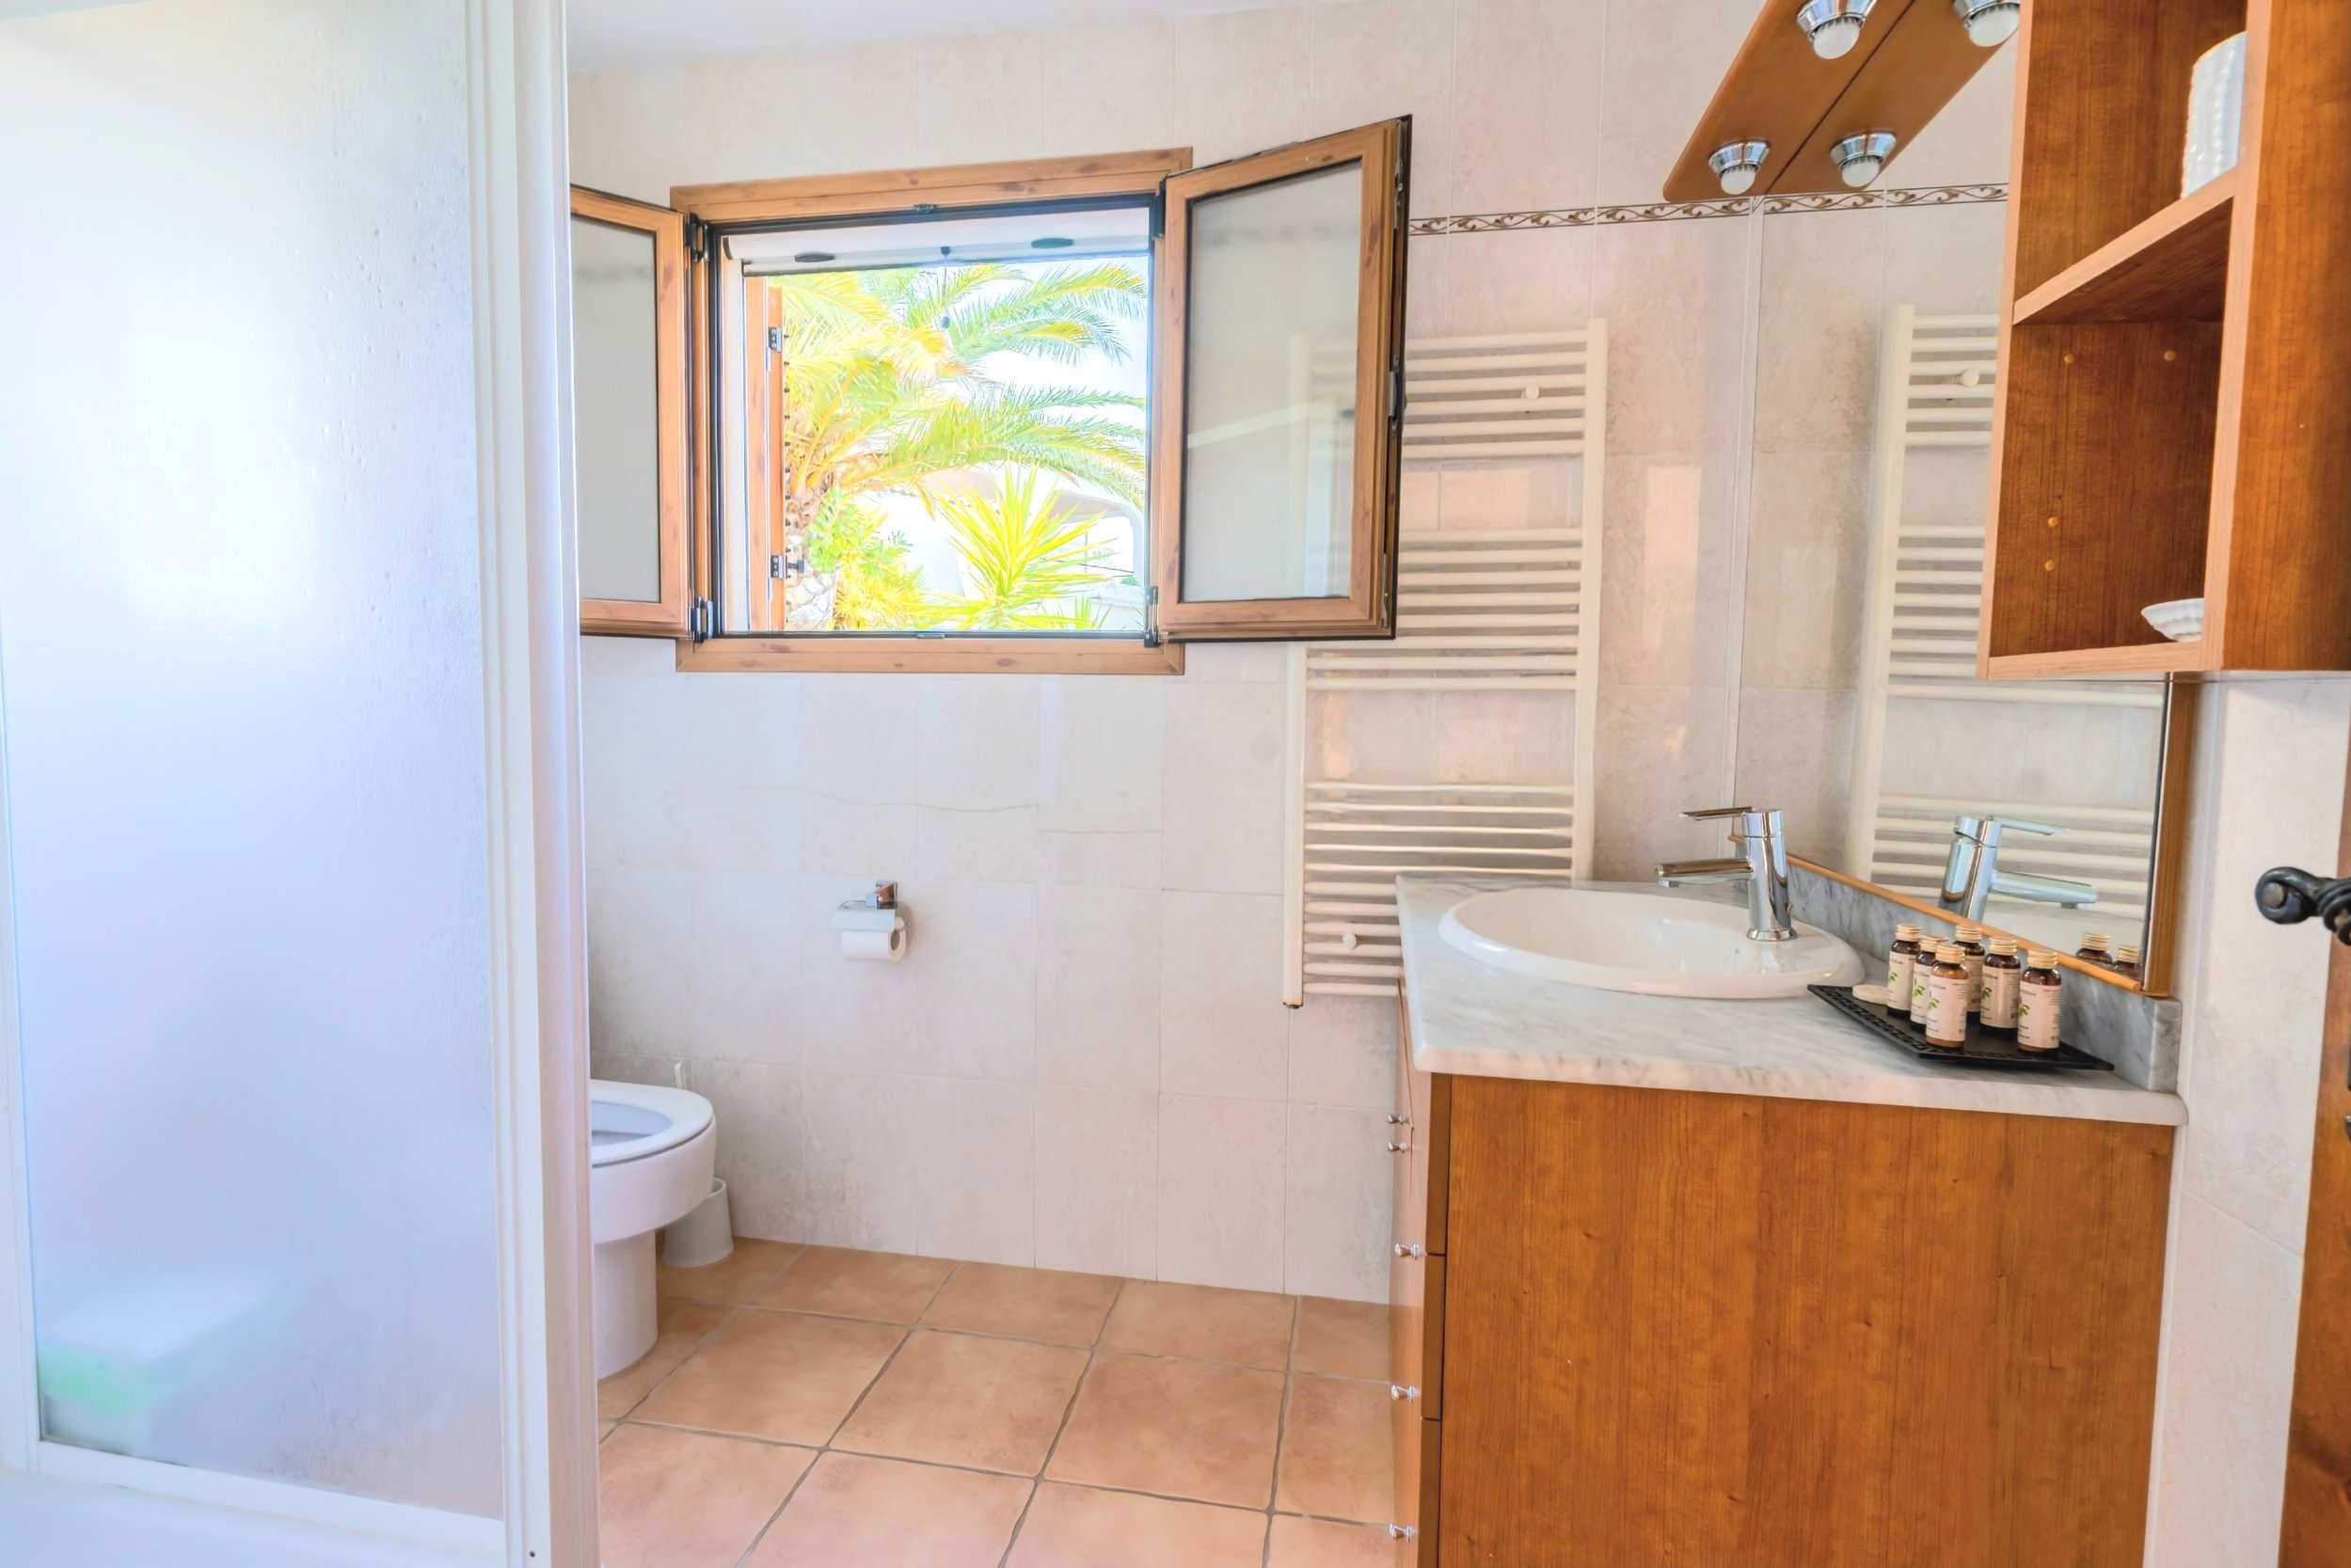 Moderno cuarto de baño en la planta baja de la Casa Principal con ducha a ras de suelo, lavabo e inodoro.